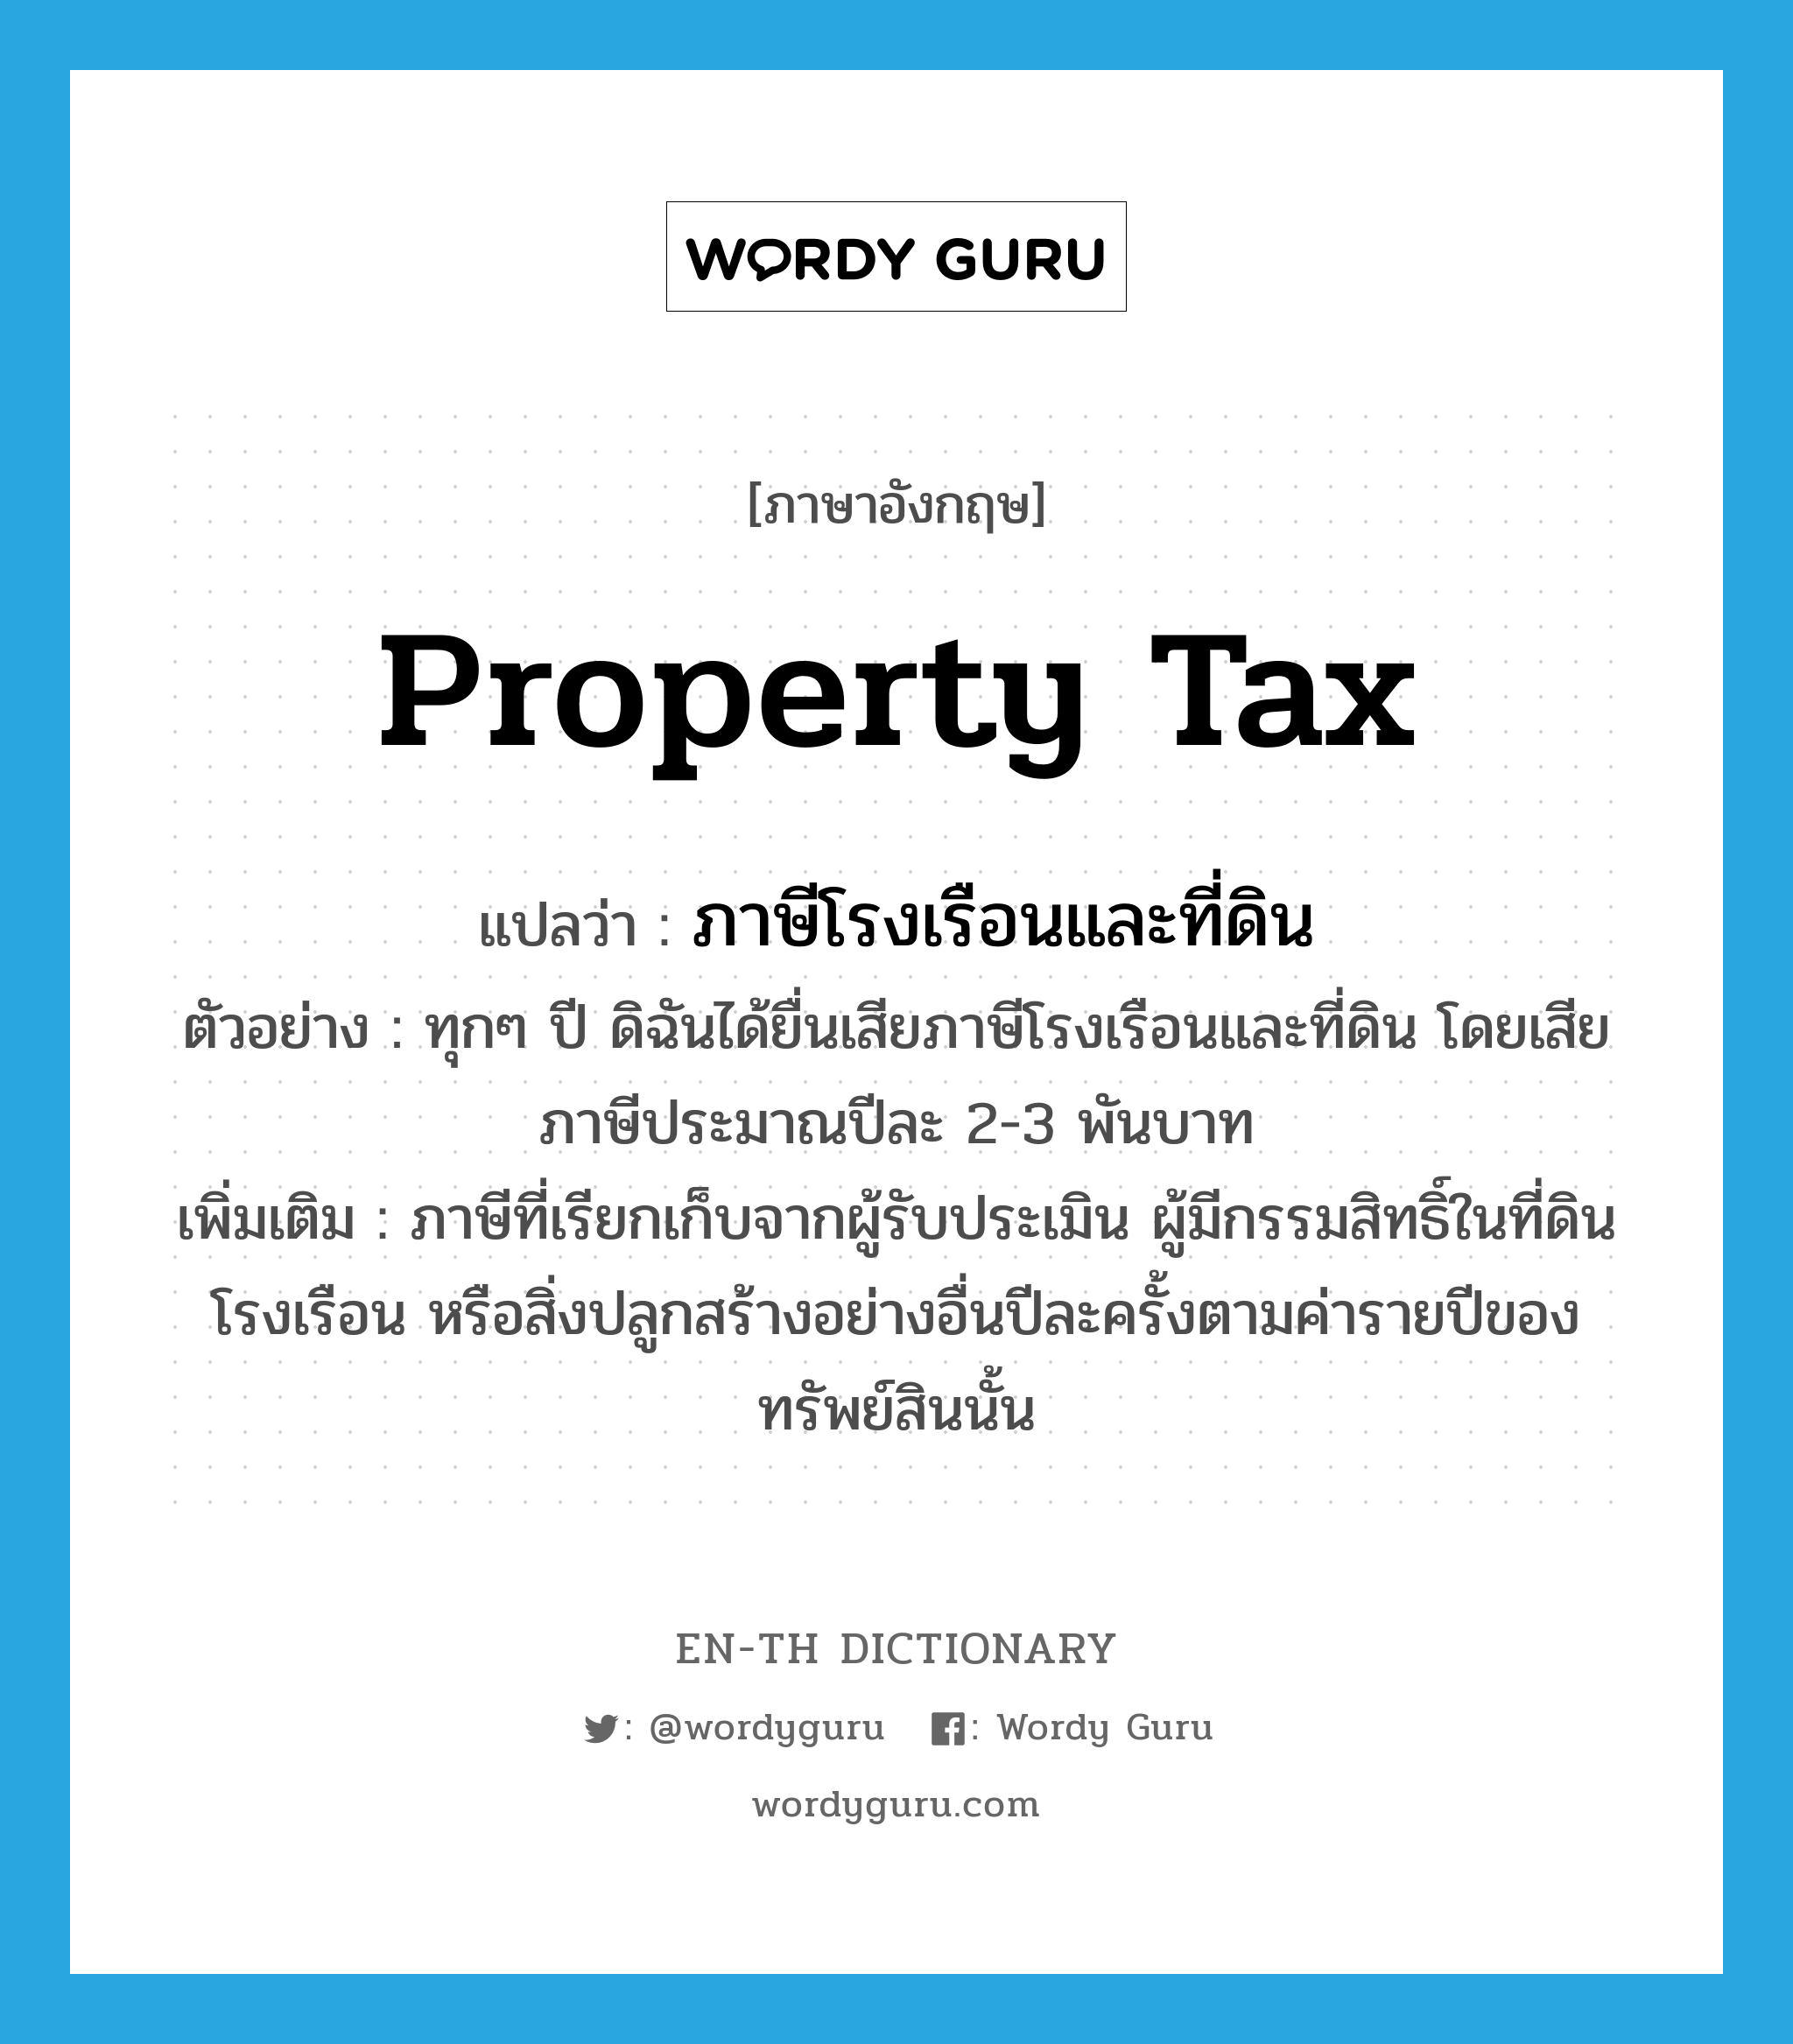 ภาษีโรงเรือนและที่ดิน ภาษาอังกฤษ?, คำศัพท์ภาษาอังกฤษ ภาษีโรงเรือนและที่ดิน แปลว่า property tax ประเภท N ตัวอย่าง ทุกๆ ปี ดิฉันได้ยื่นเสียภาษีโรงเรือนและที่ดิน โดยเสียภาษีประมาณปีละ 2-3 พันบาท เพิ่มเติม ภาษีที่เรียกเก็บจากผู้รับประเมิน ผู้มีกรรมสิทธิ์ในที่ดินโรงเรือน หรือสิ่งปลูกสร้างอย่างอื่นปีละครั้งตามค่ารายปีของทรัพย์สินนั้น หมวด N